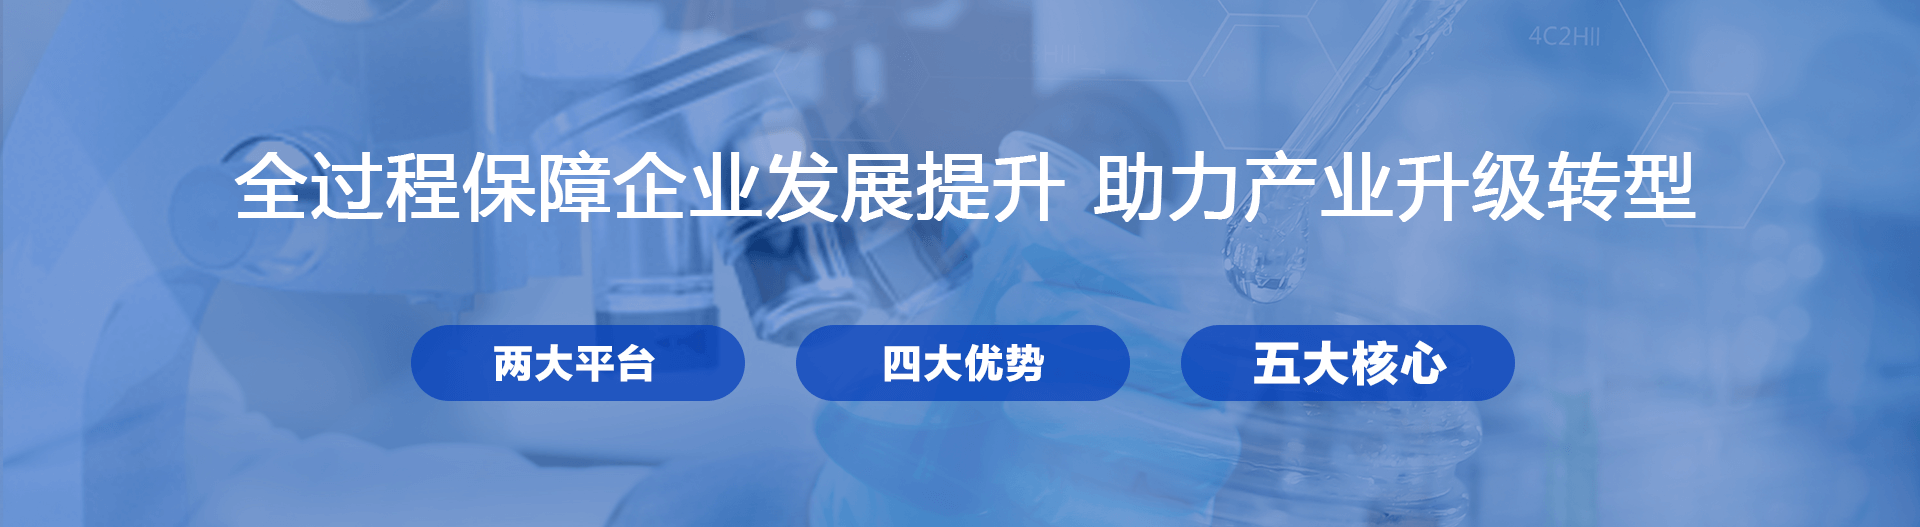 浙江华颀安全科技有限公司_反应安全风险评估